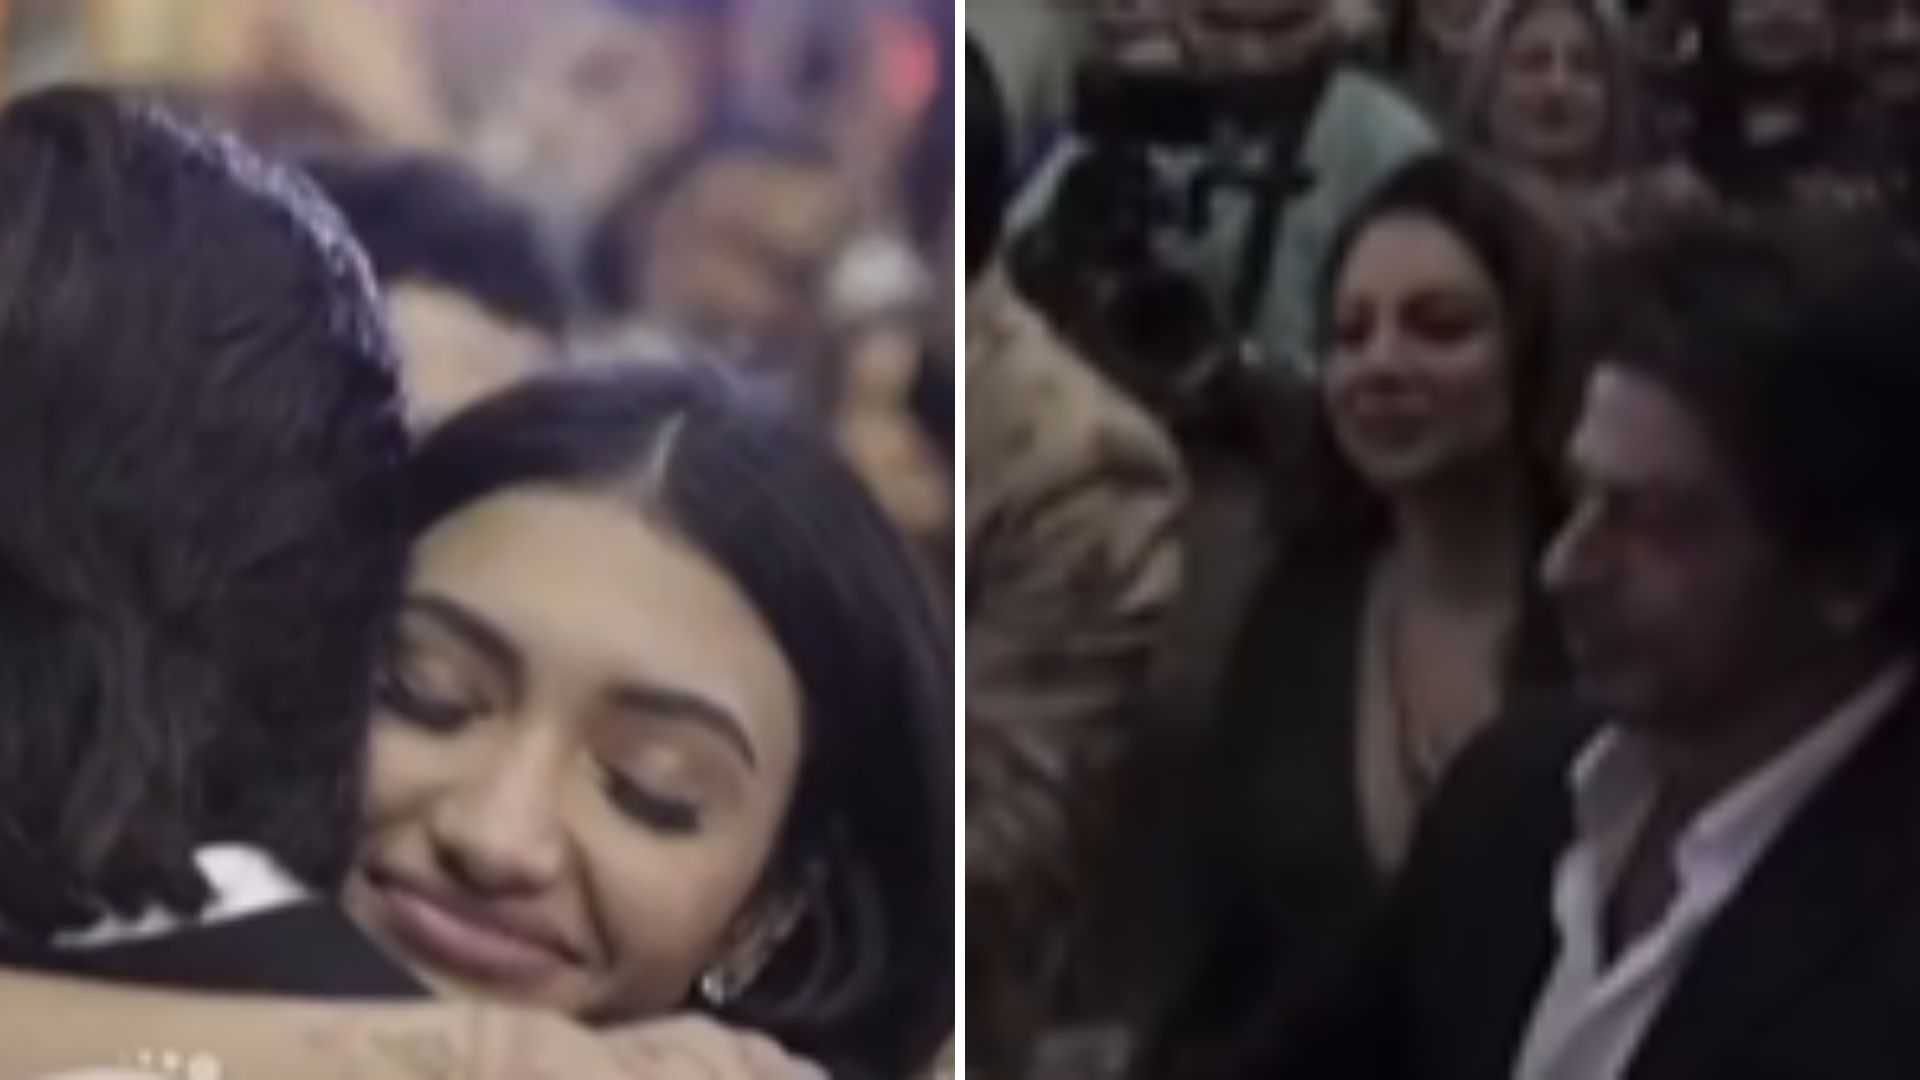 अलाना पांडे की शादी में टूटा शाहरुख खान के सब्र का बांध, जमाने के सामने छलके आंसू